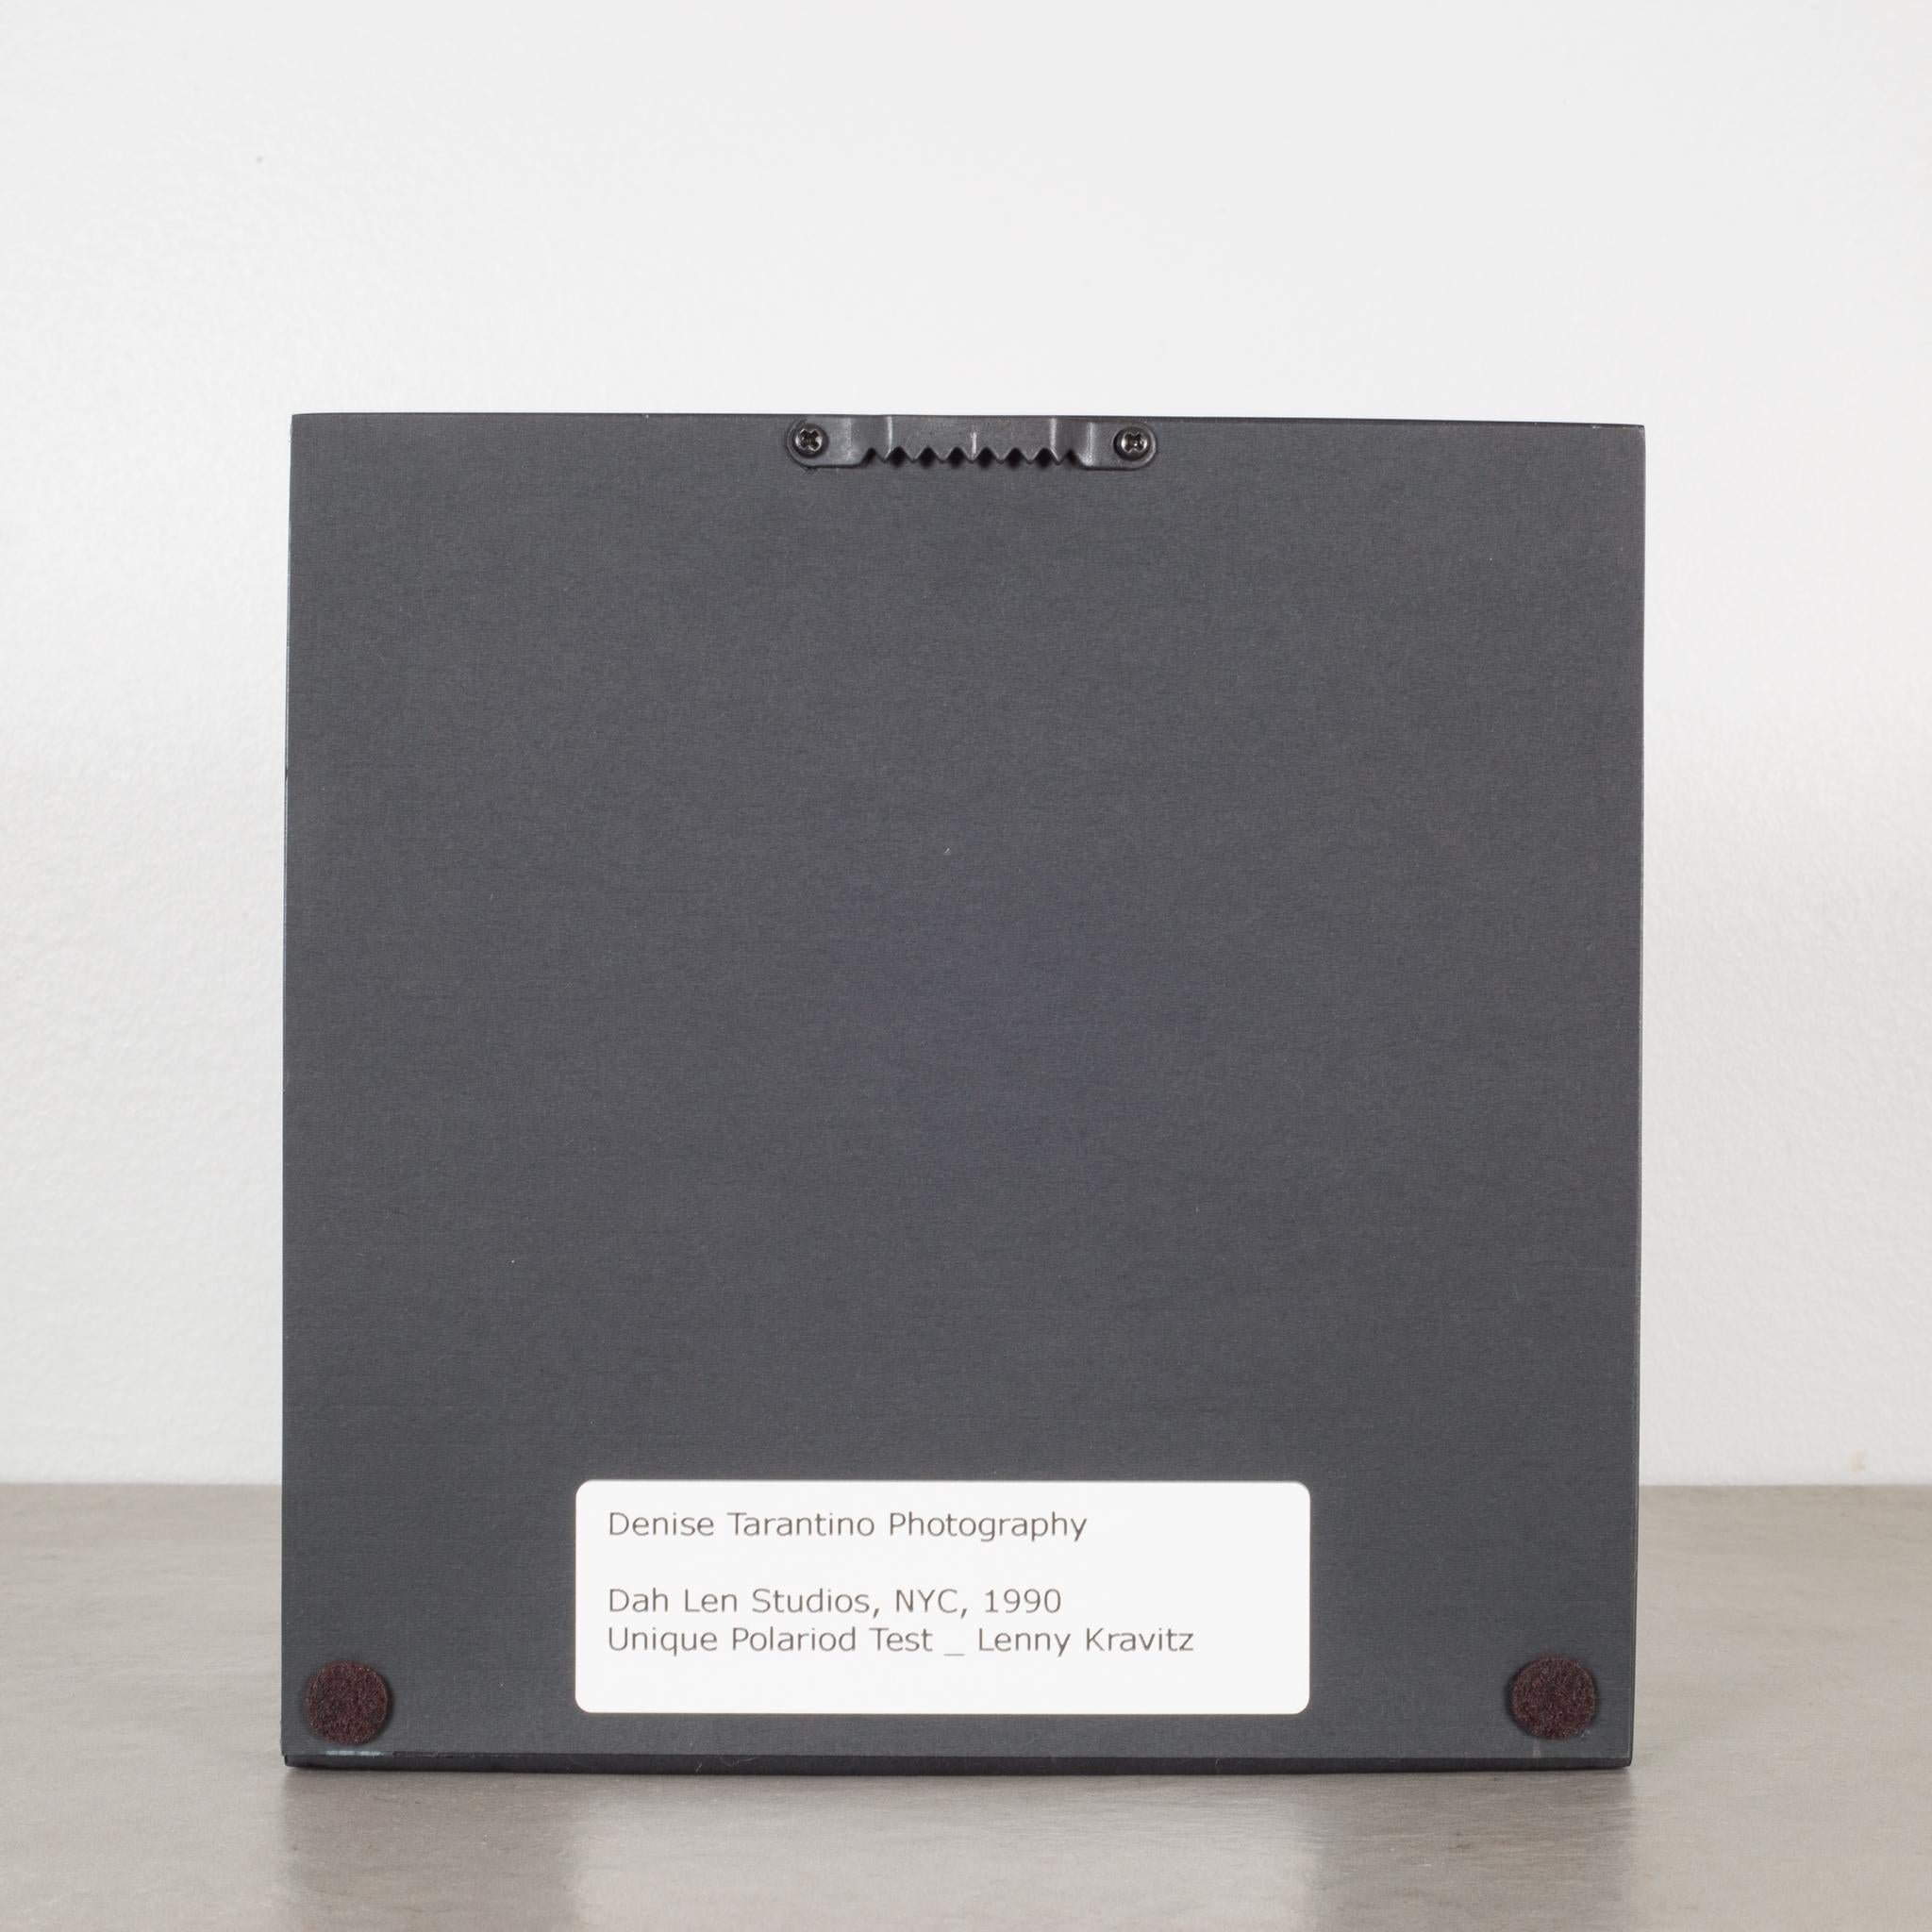 Modern Polaroid Test Image of Lenny Kravitz by Denise Tarantino for Dah Len Studios